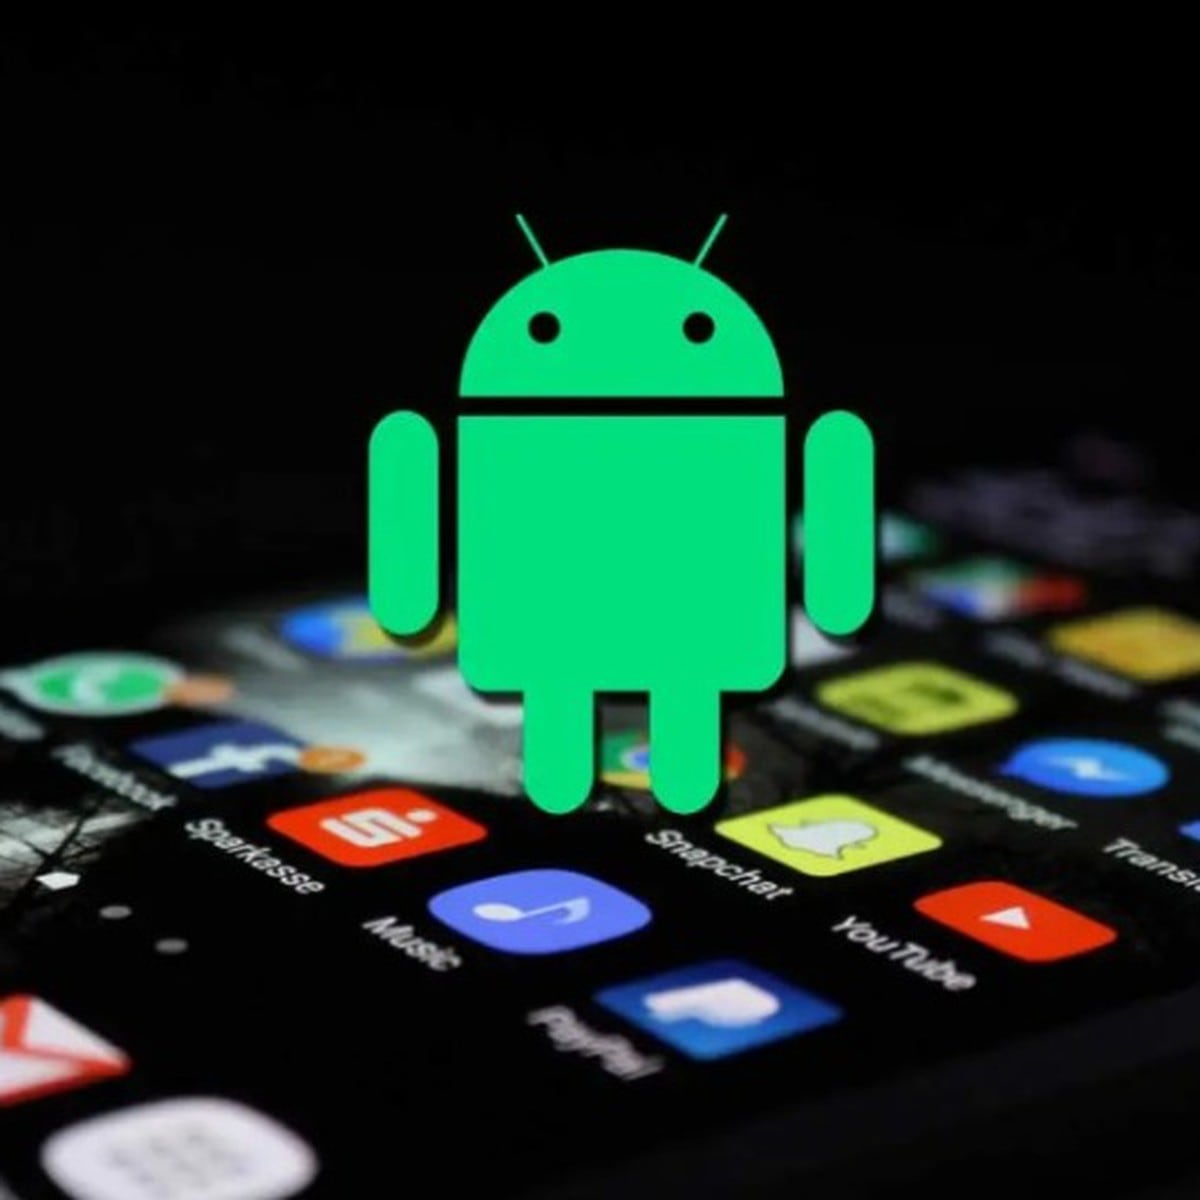 Pasar de un teléfono Android a otro Android: guía con TODOS los